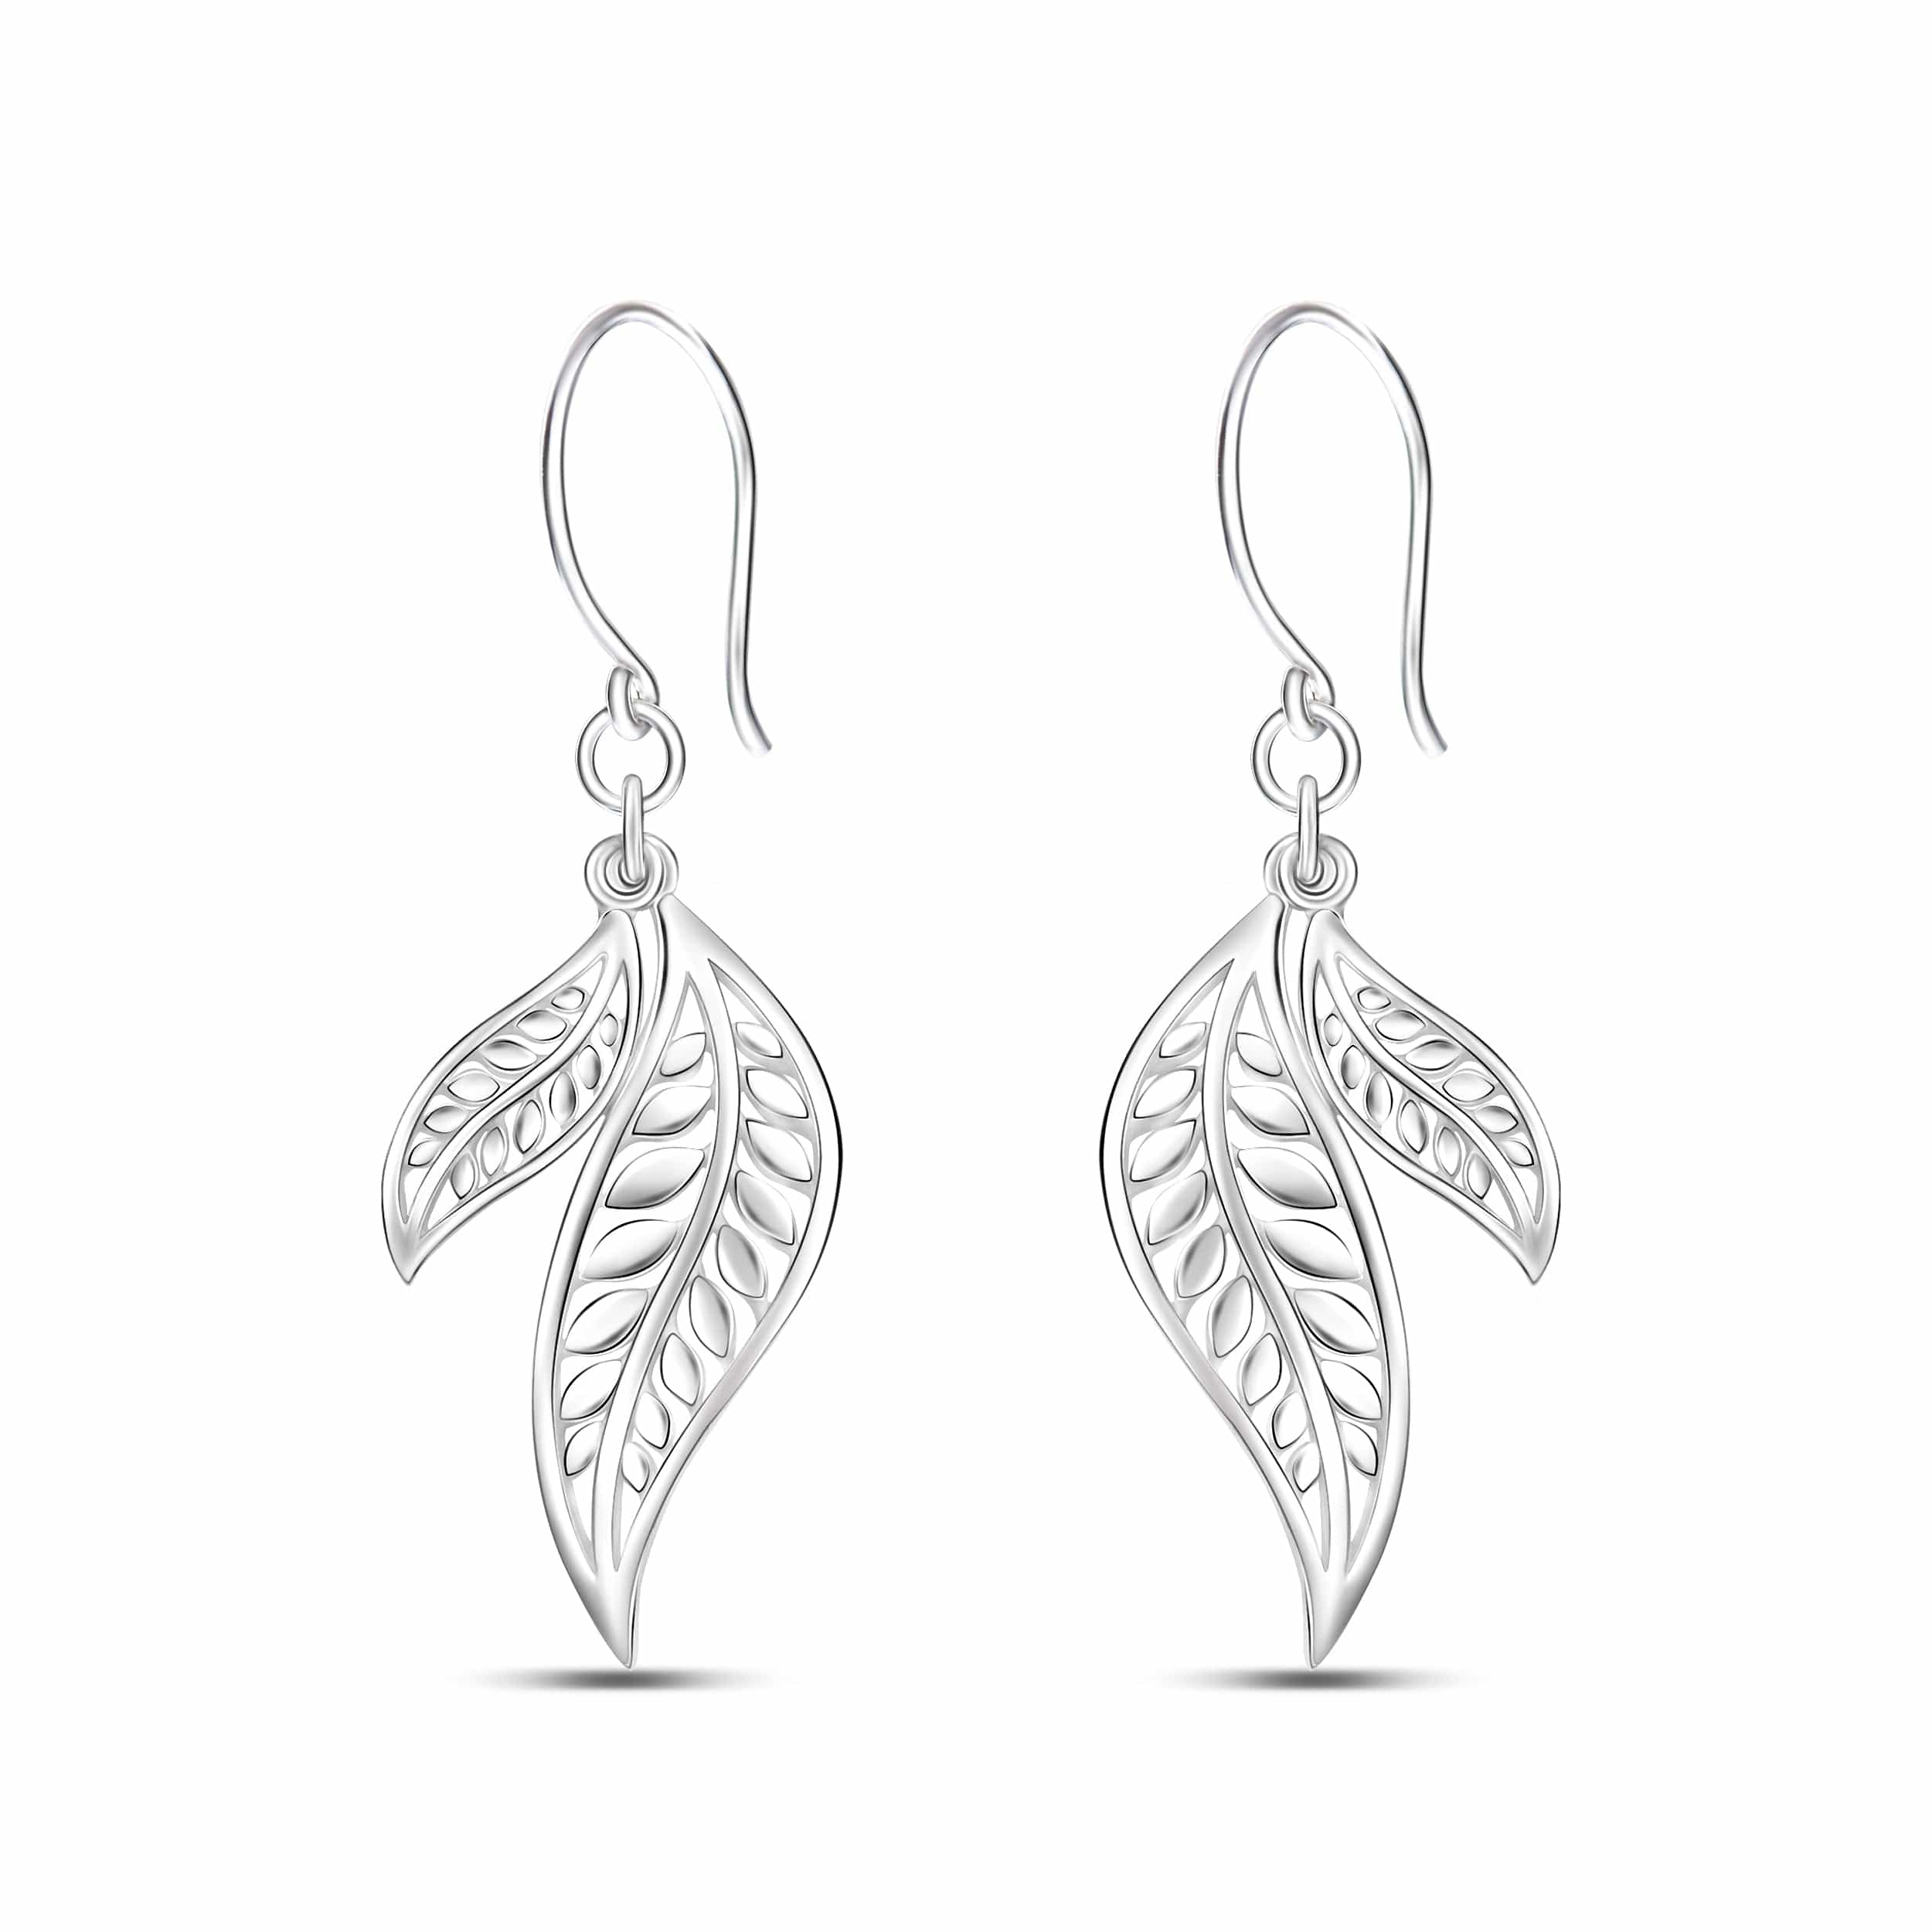 Feathered Leaf Drop Earrings Silver Dangle Earrings Drop Earrings